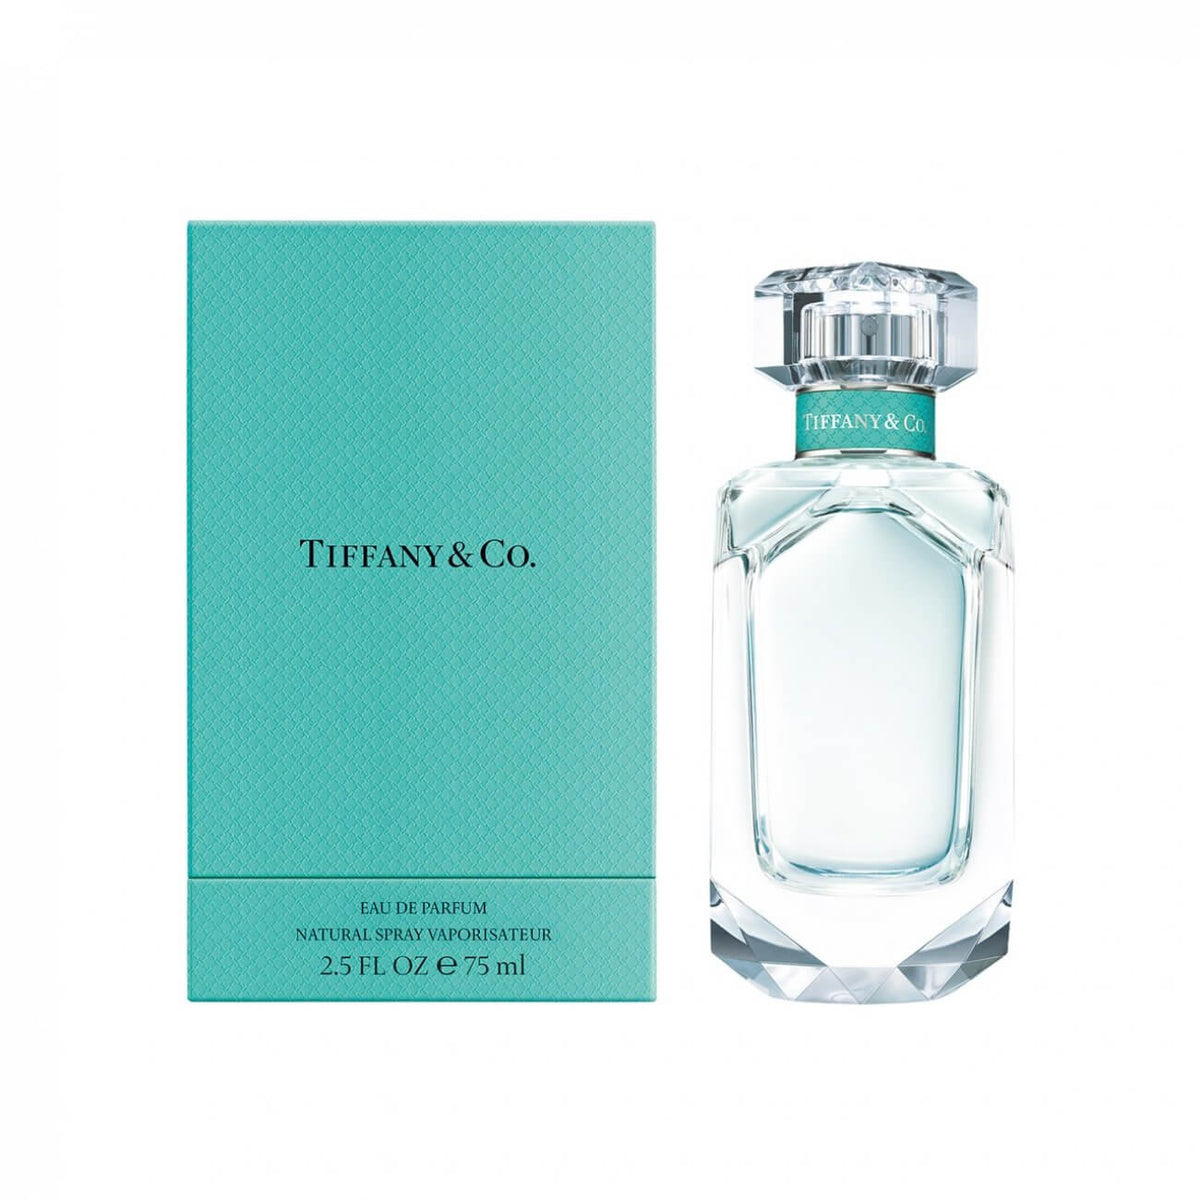 Tiffany & Co. 75ml